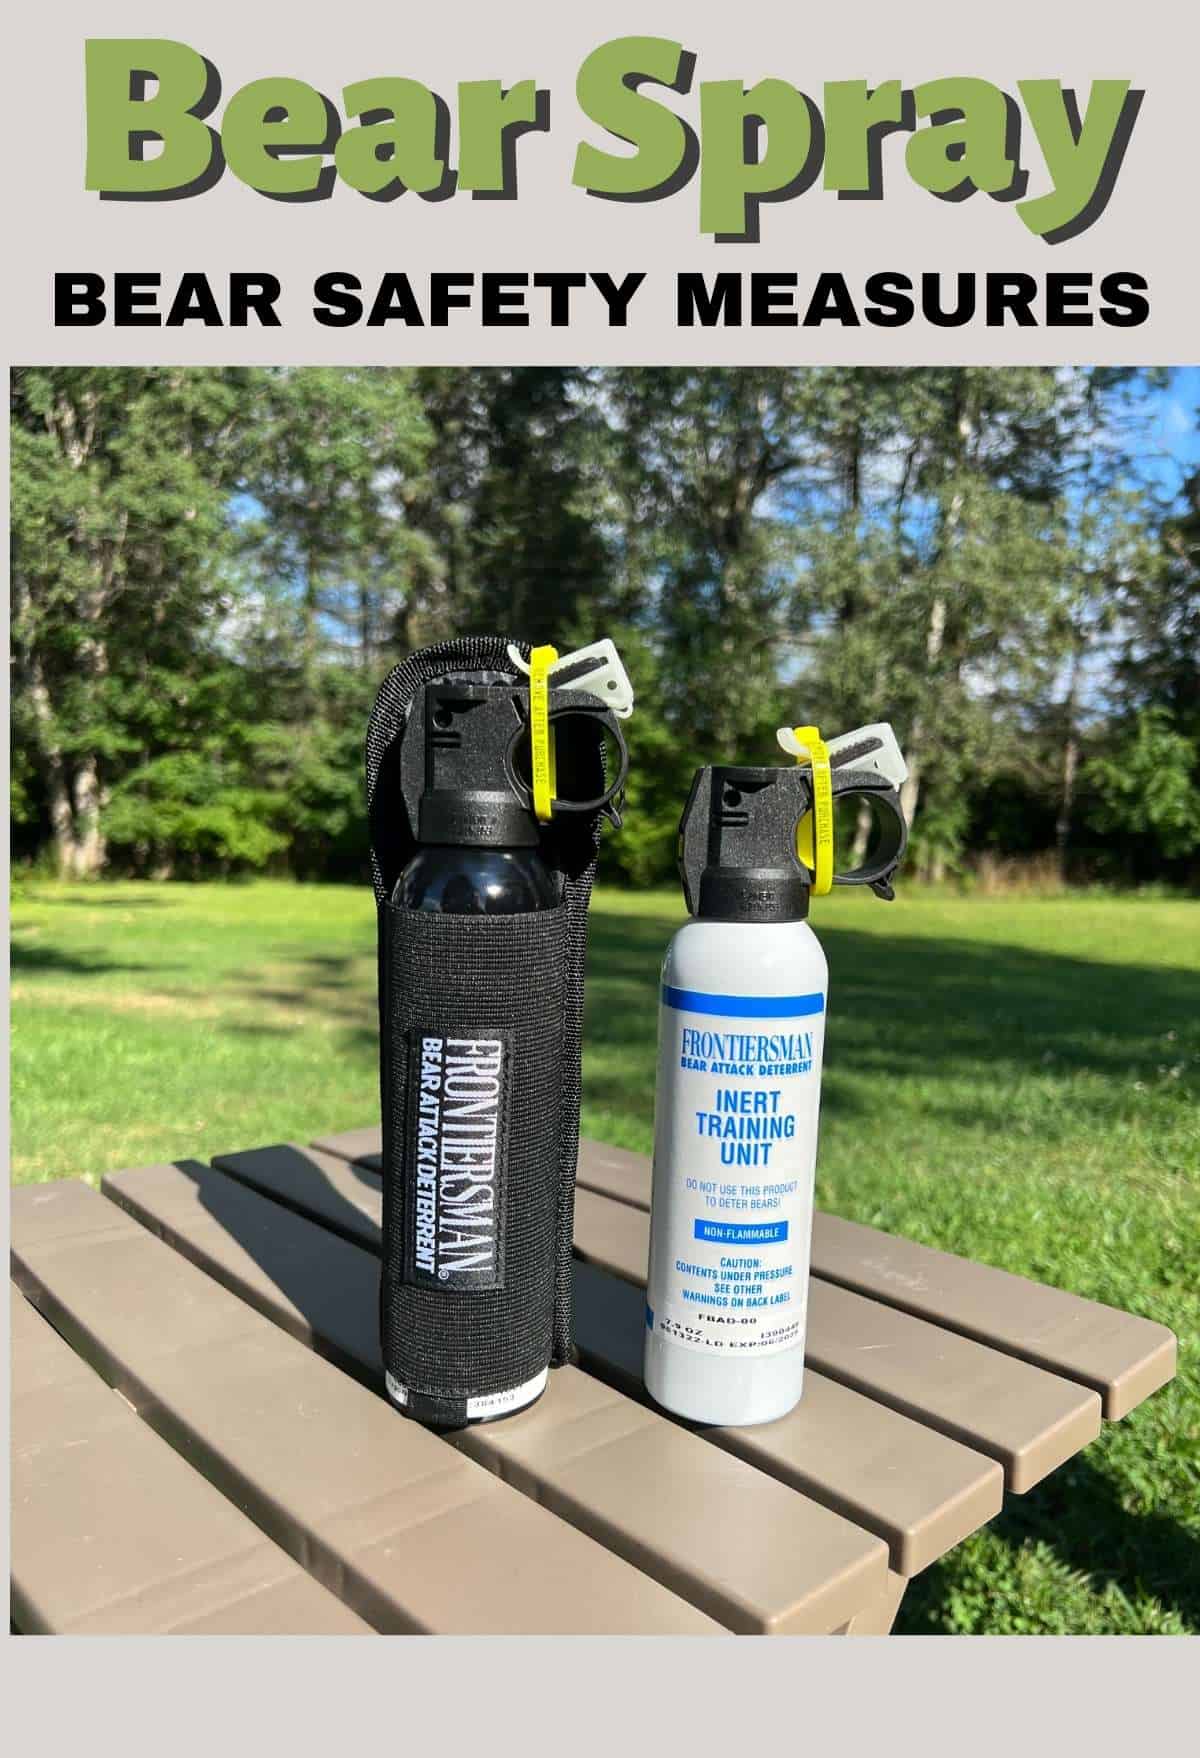 Bear Safety Measures Include Bear Spray